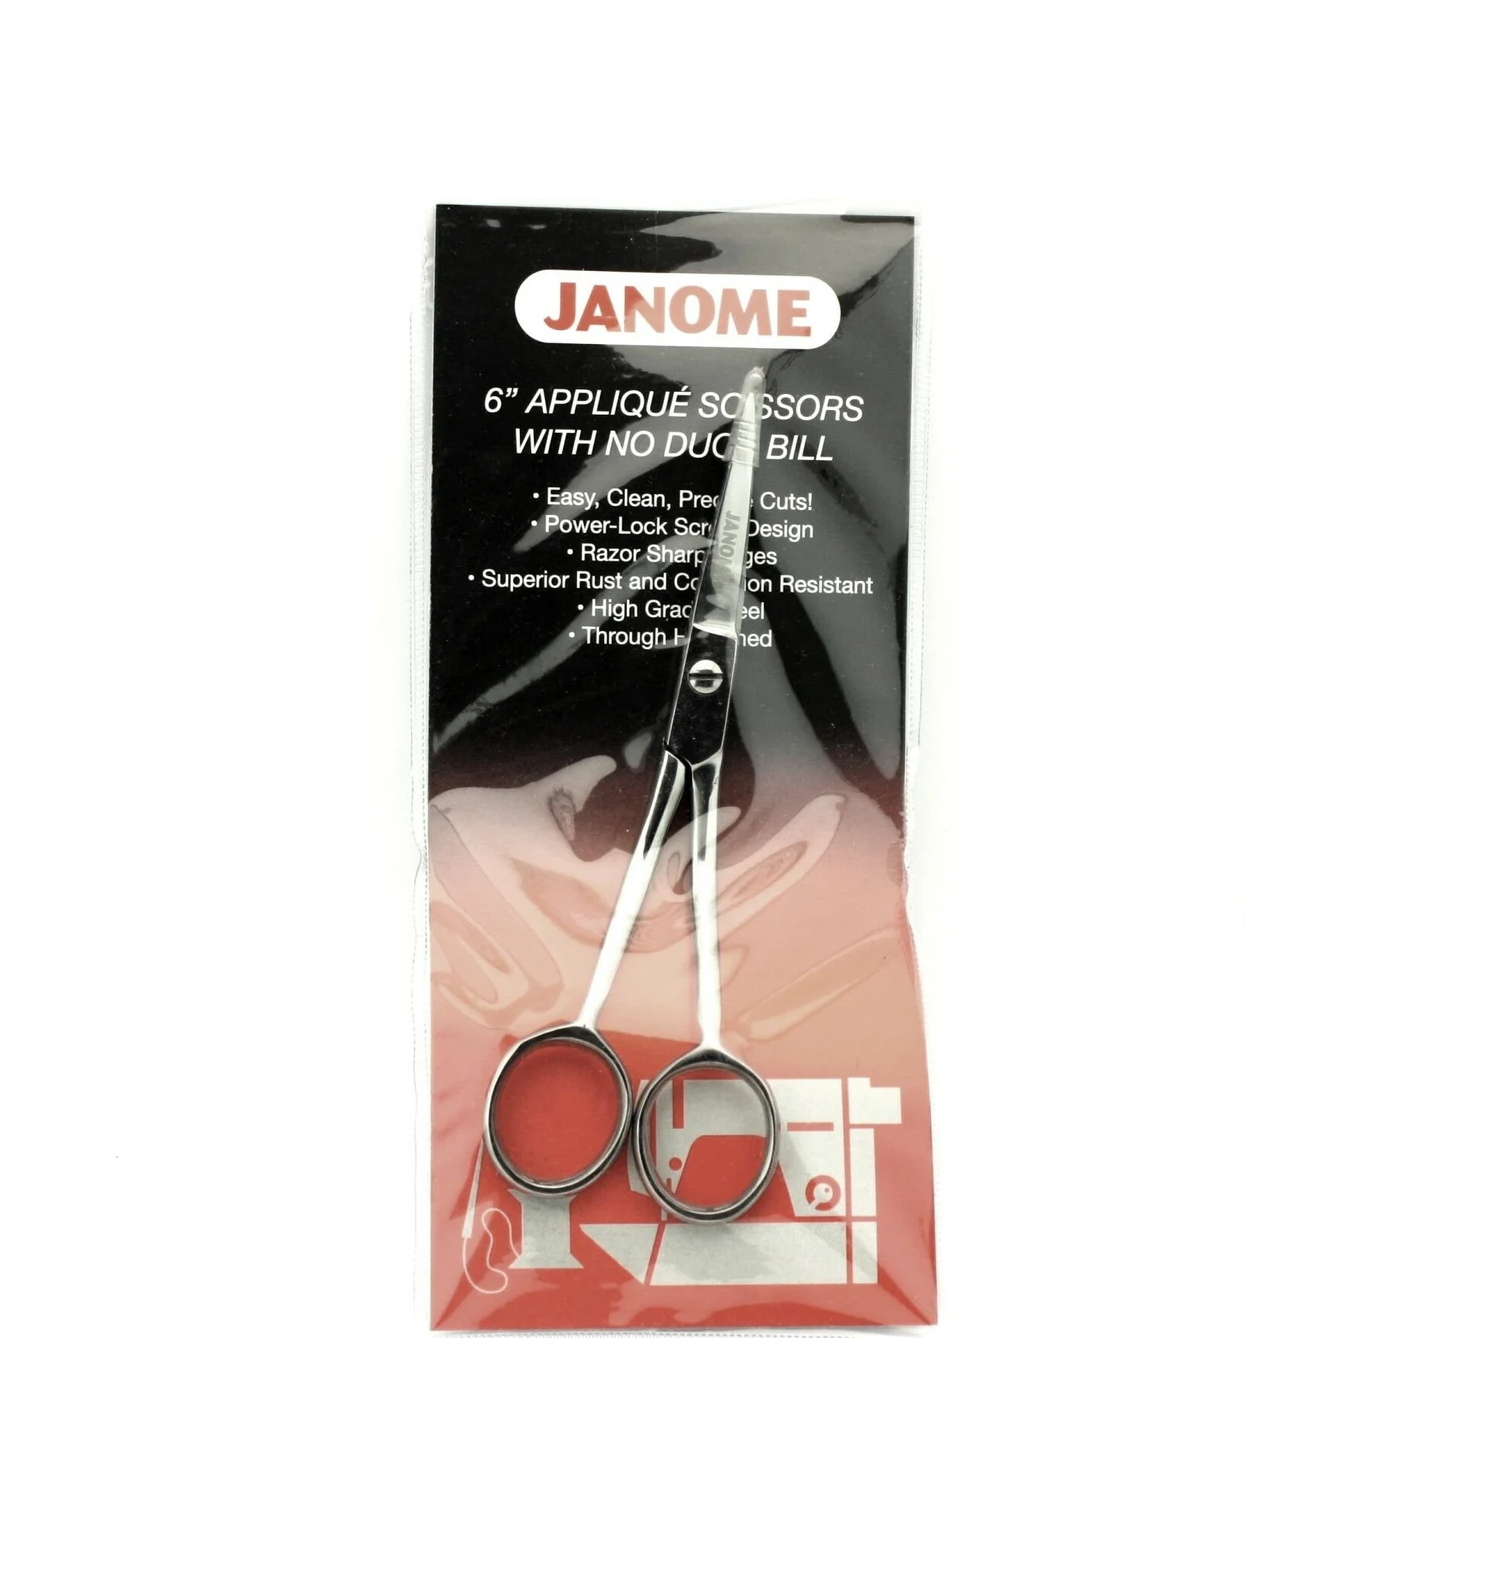 Janome 6" Applique Scissors with No Duck Bill